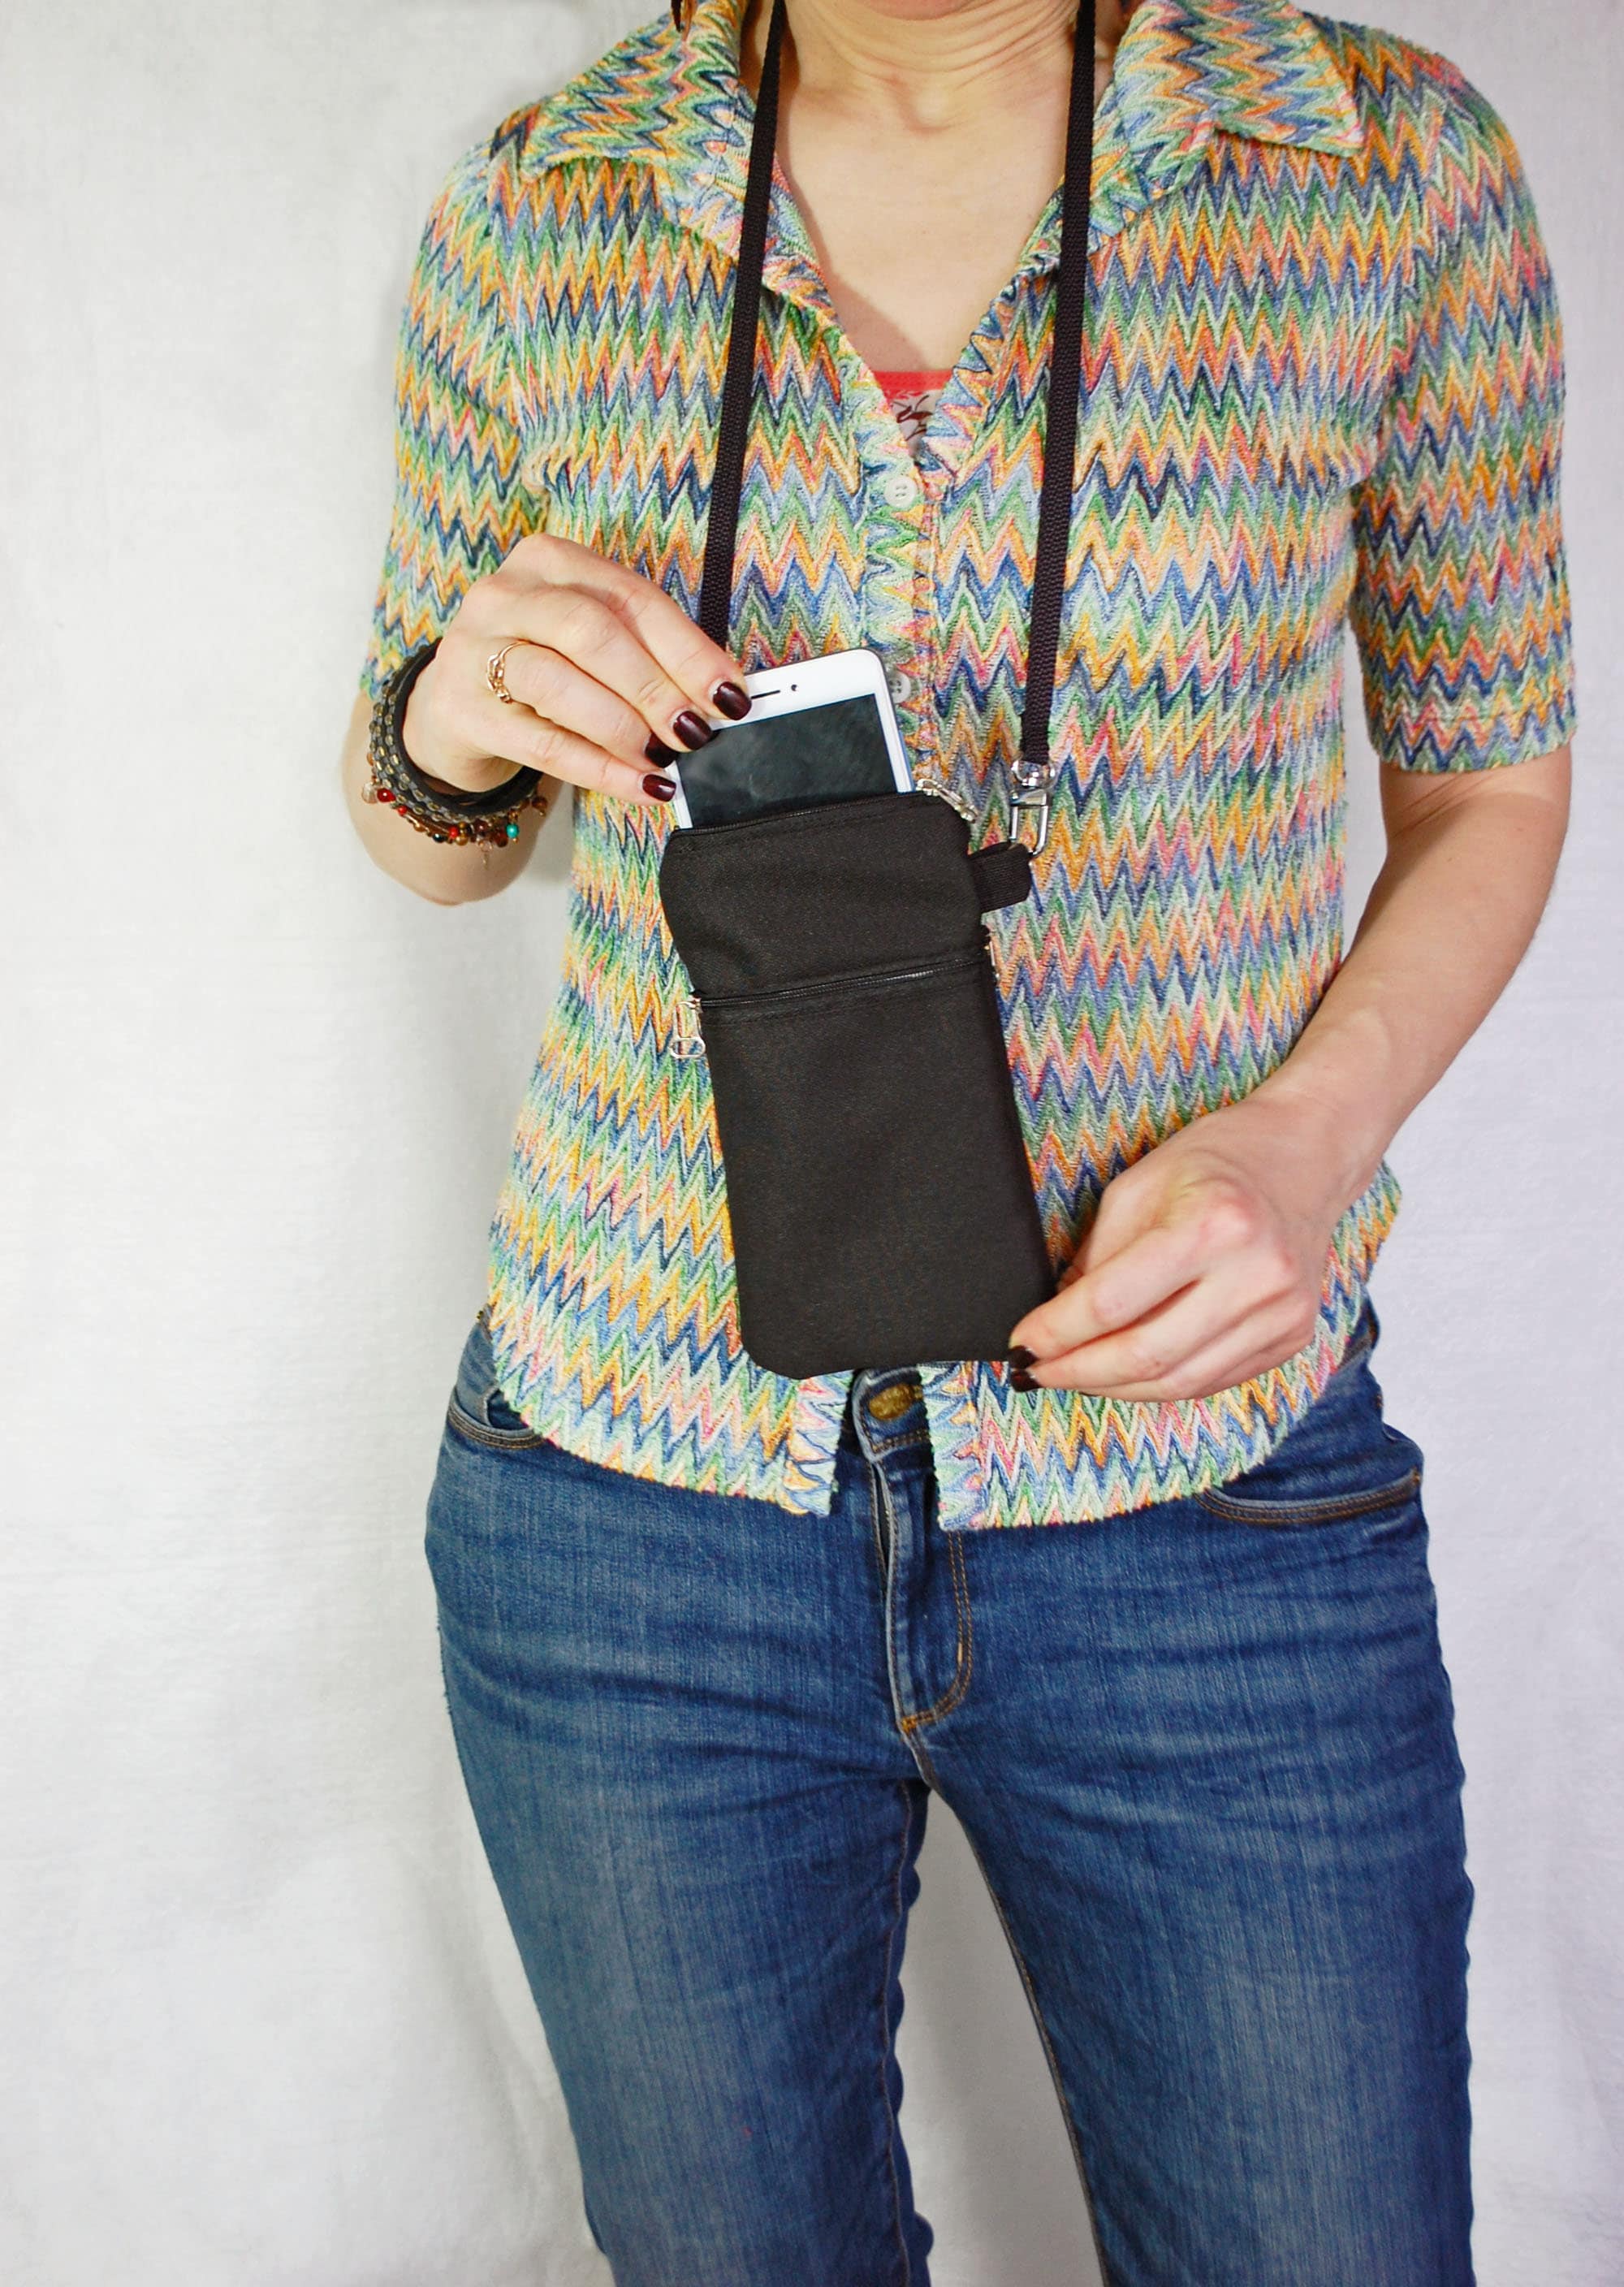 bolso pequeño para colgar del cuello o bandolera para teléfono móvil